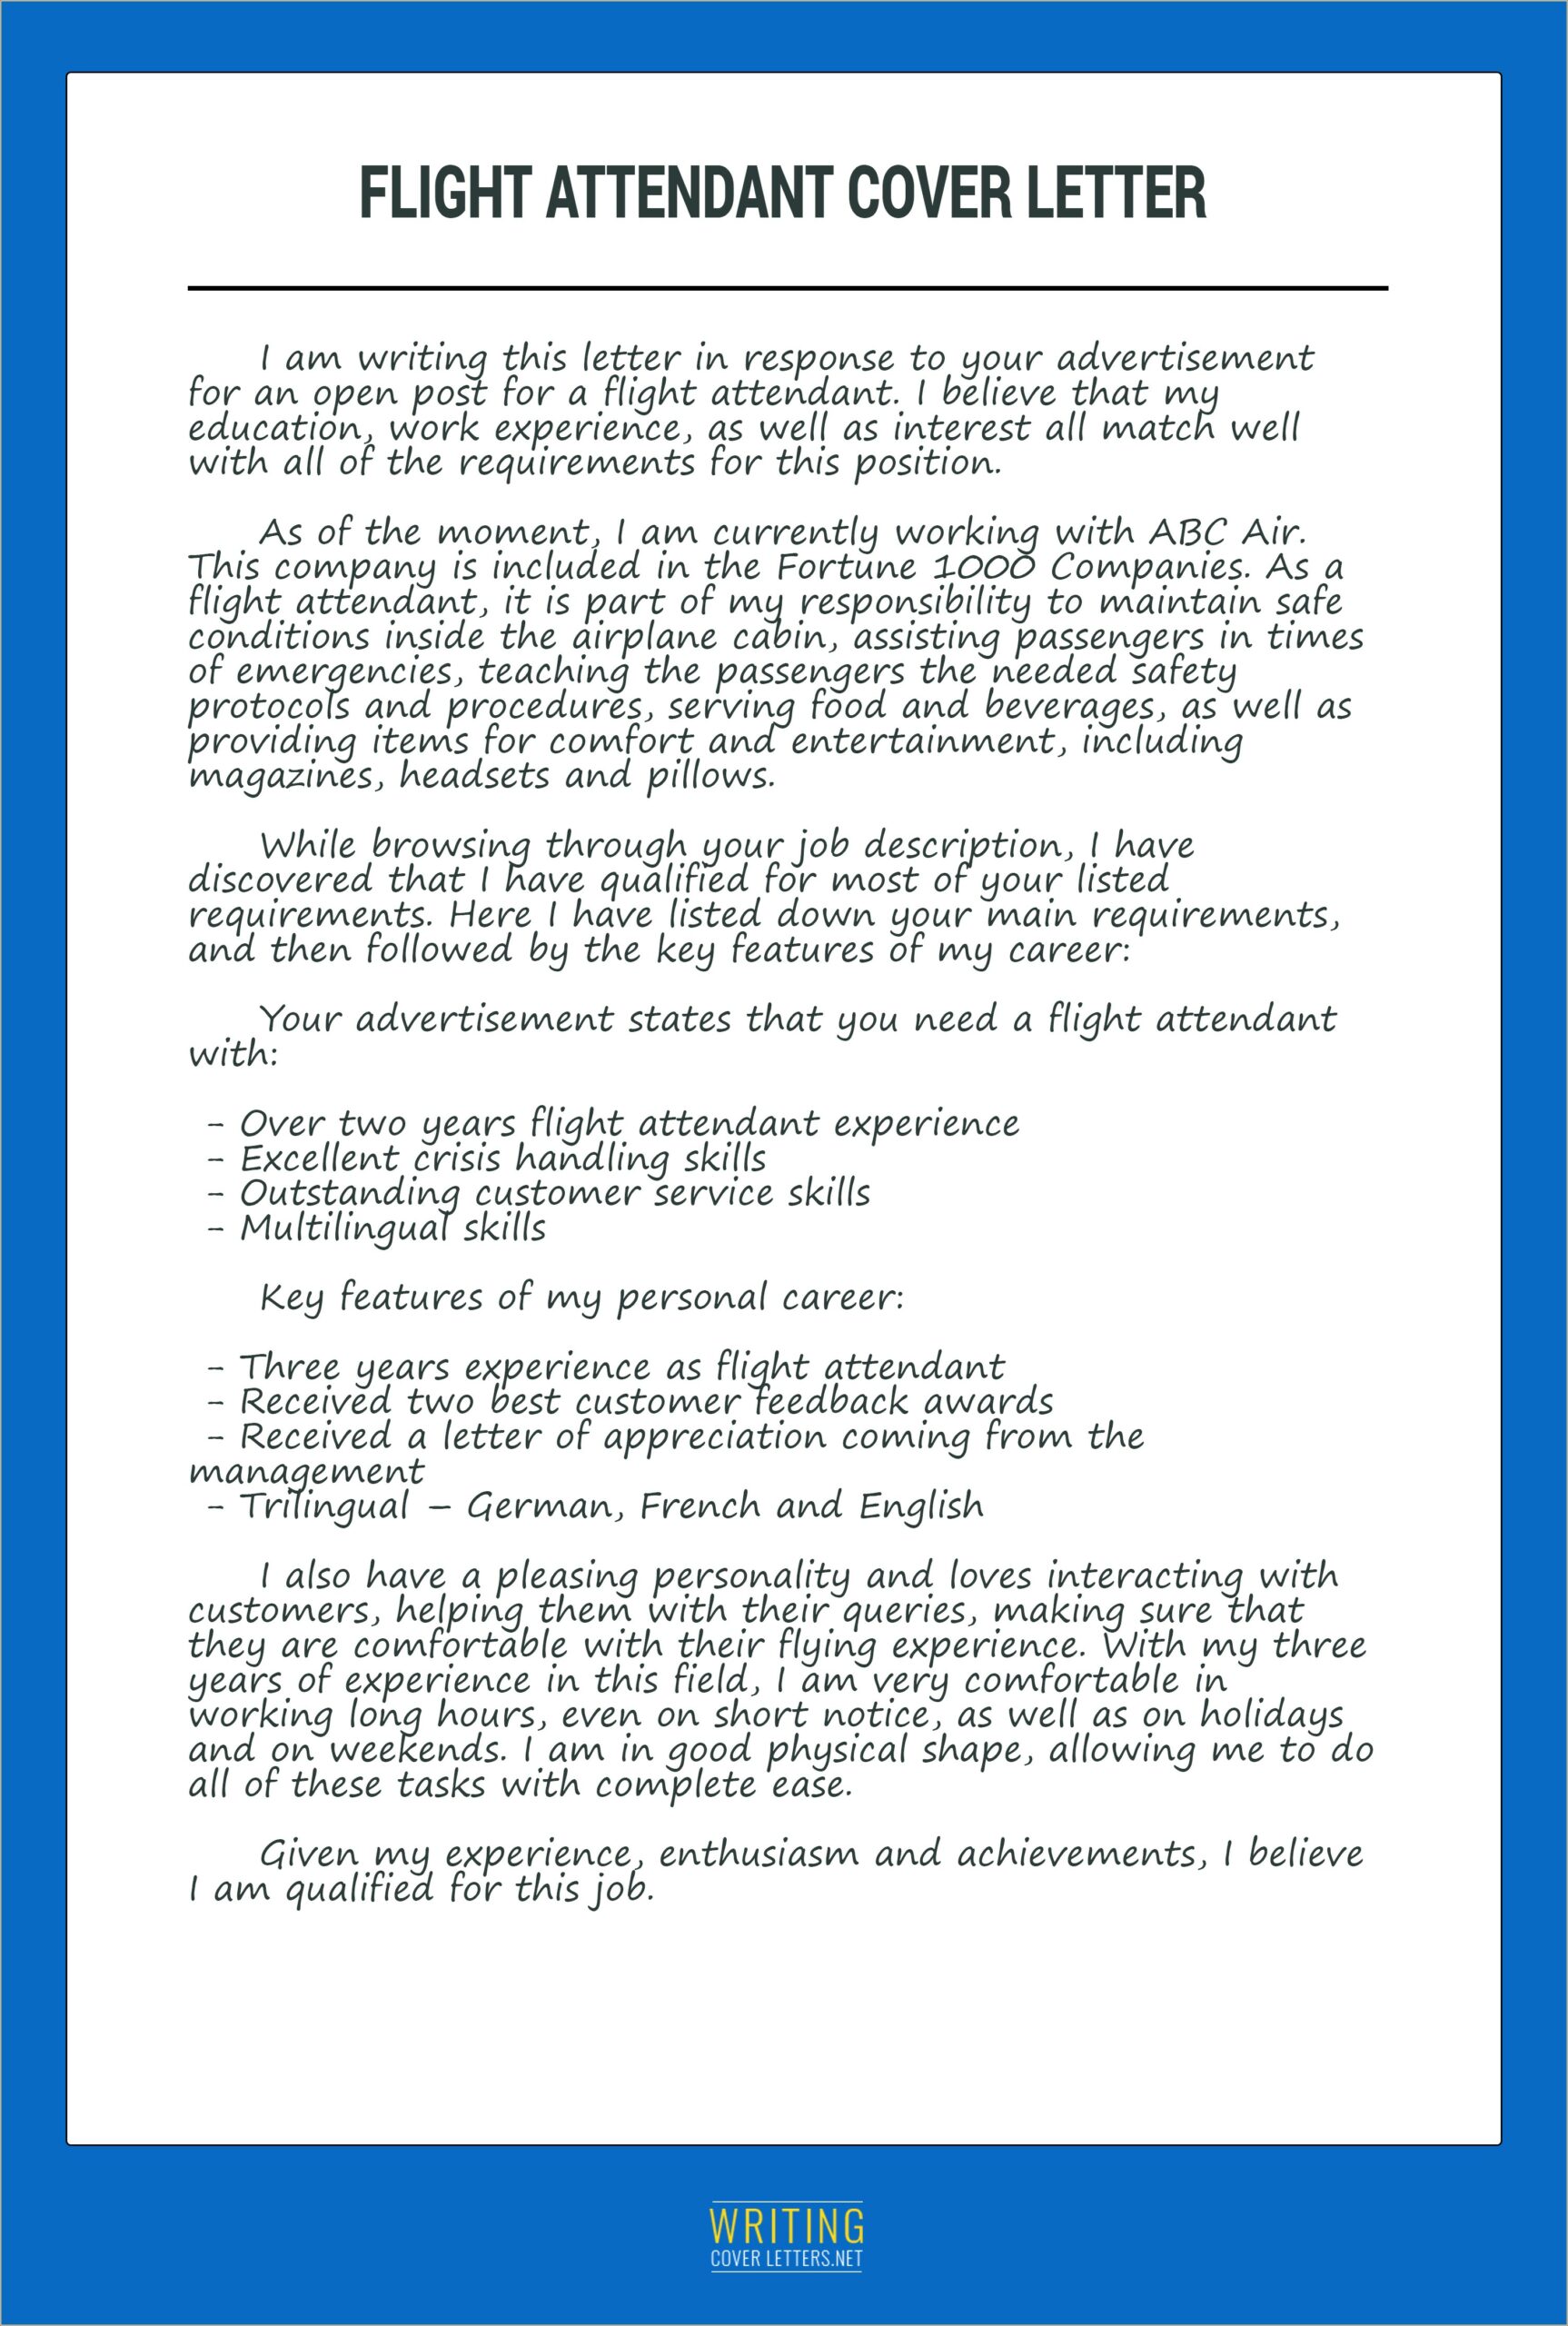 Resume Cover Letter Sample Flight Attendant